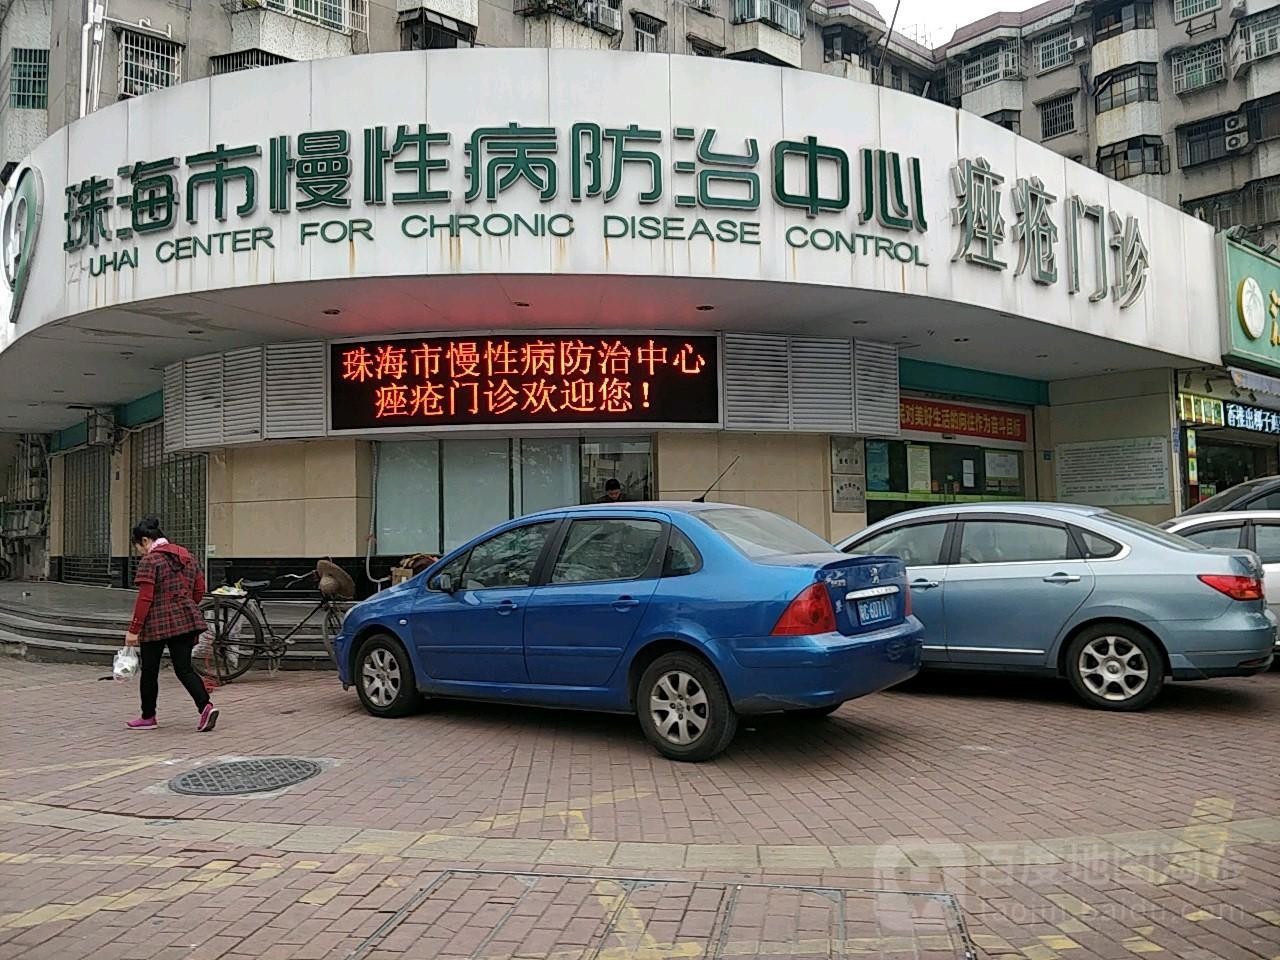 kasus perusahaan terbaru tentang Rumah Sakit Ketiga Zhuhai